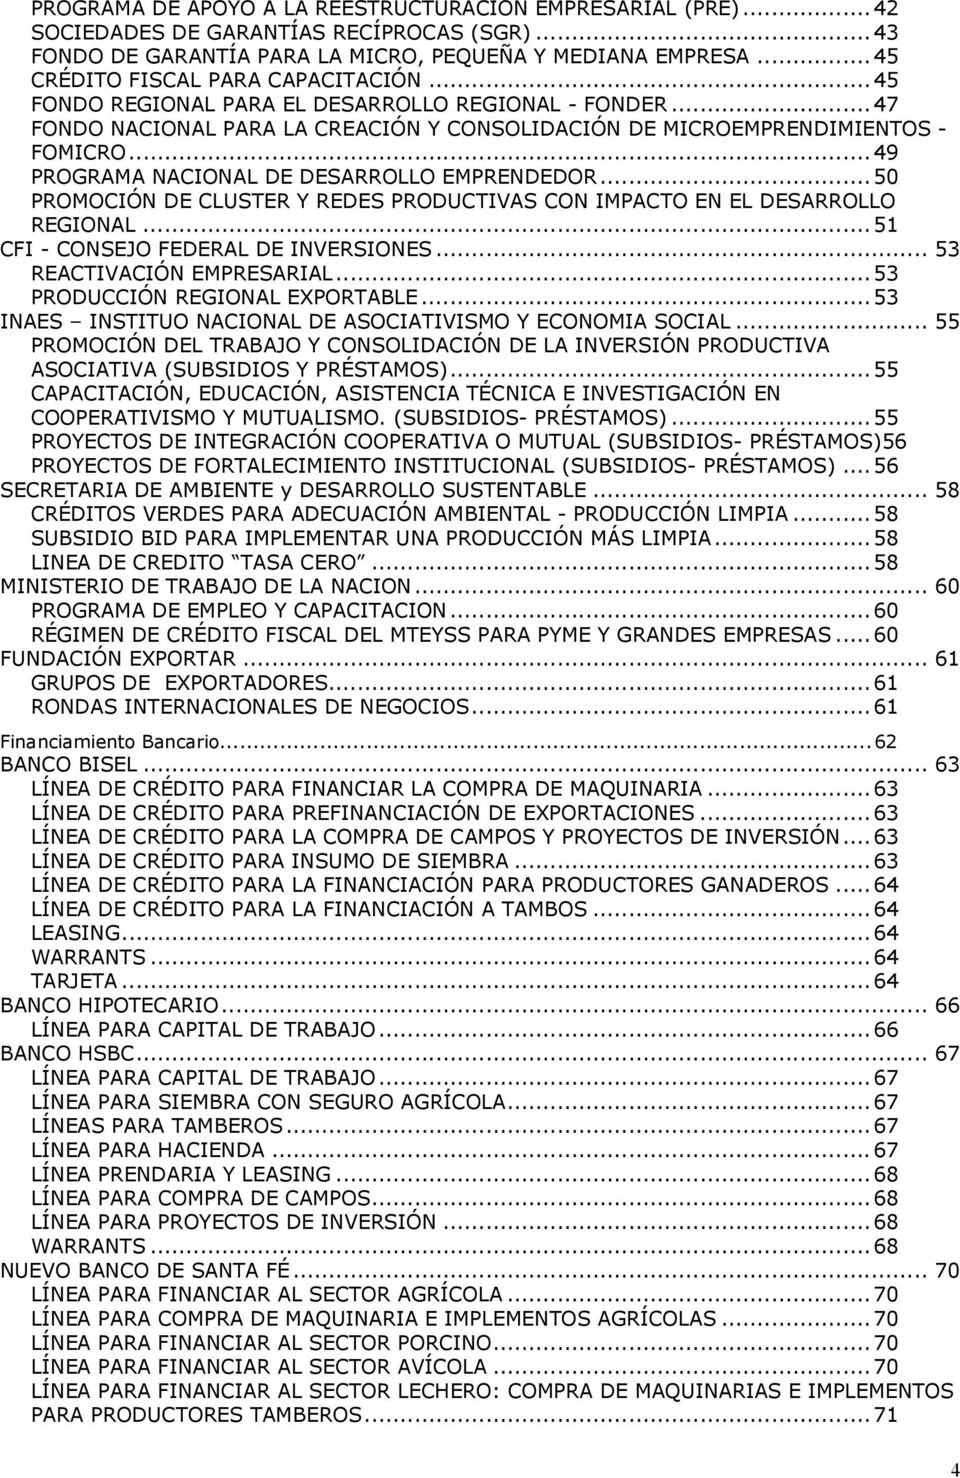 ..49 PROGRAMA NACIONAL DE DESARROLLO EMPRENDEDOR...50 PROMOCIÓN DE CLUSTER Y REDES PRODUCTIVAS CON IMPACTO EN EL DESARROLLO REGIONAL...51 CFI - CONSEJO FEDERAL DE INVERSIONES.